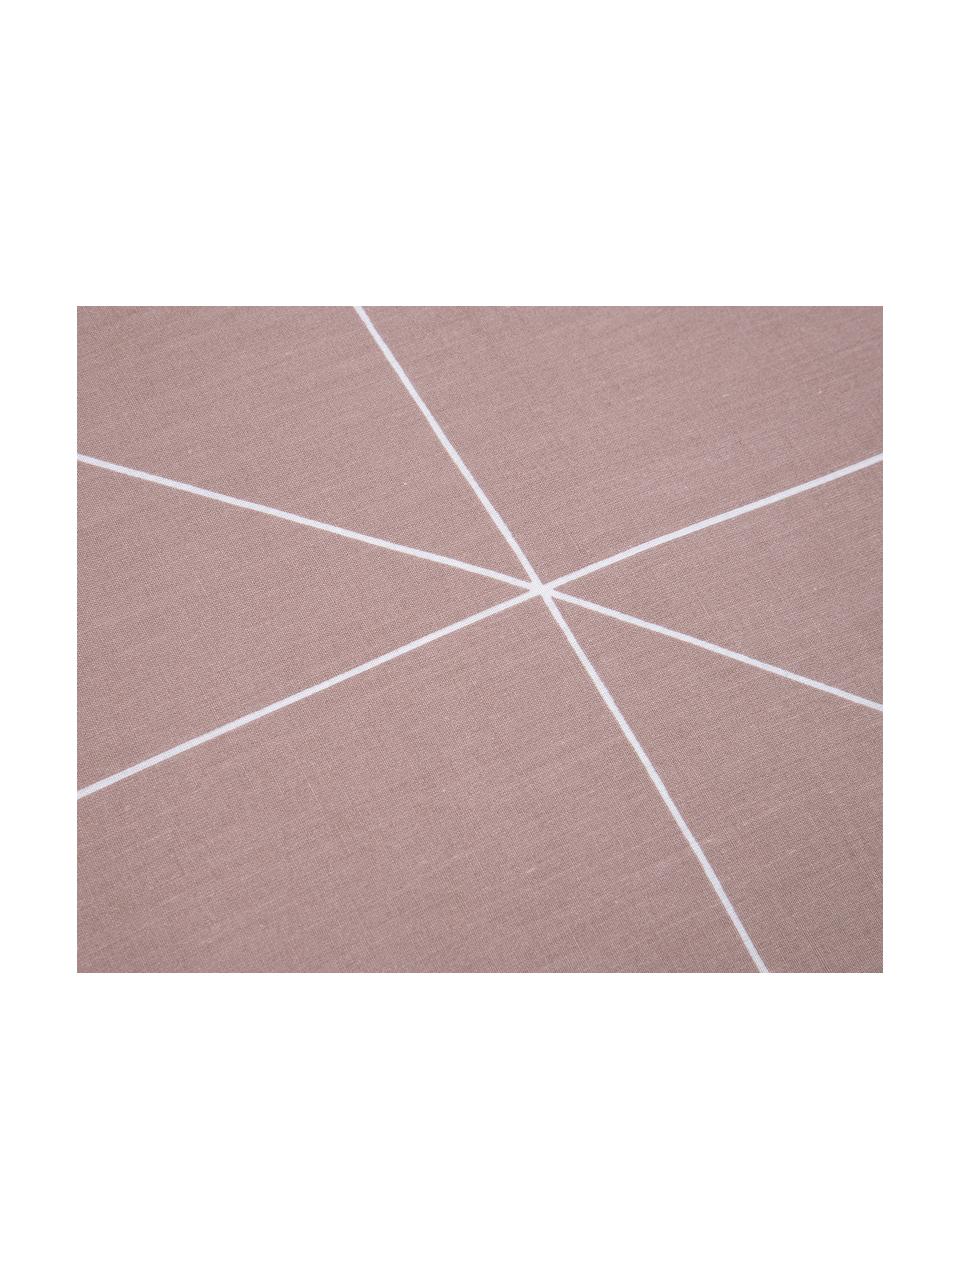 Biancheria da letto reversibile in cotone ranforce Marla, Malva & bianco, fantasia, 255 x 200 cm, 3 pz